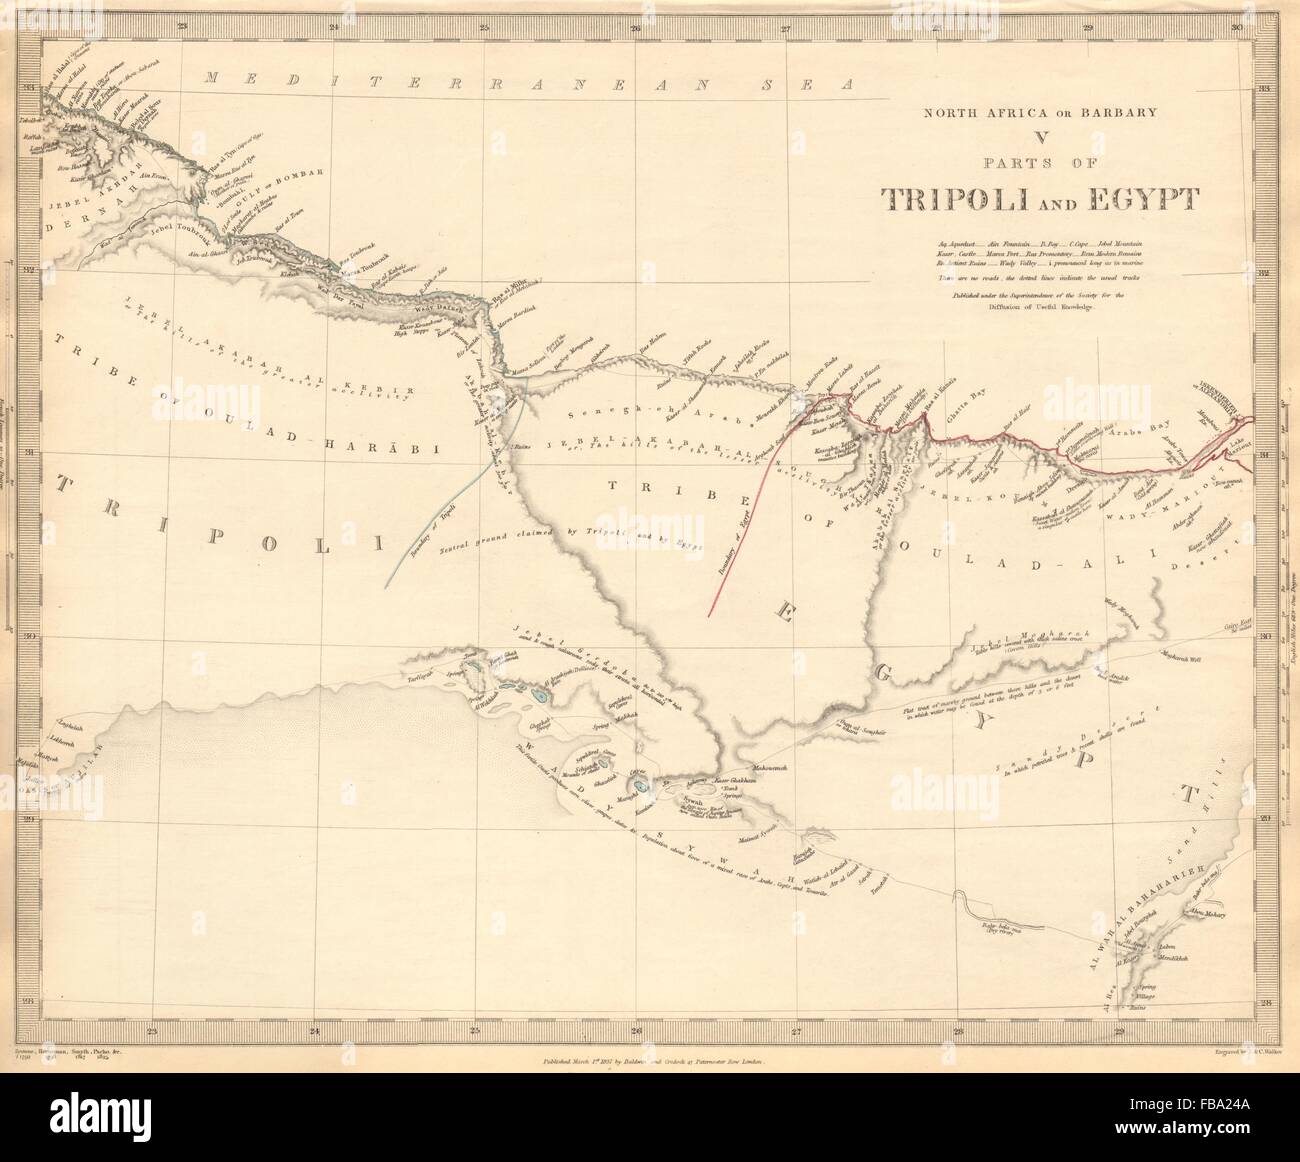 La barbarie de l'AFRIQUE DU NORD. Parties de Tripoli (Libye) et l'Égypte. Tribus. SDUK, 1844 map Banque D'Images